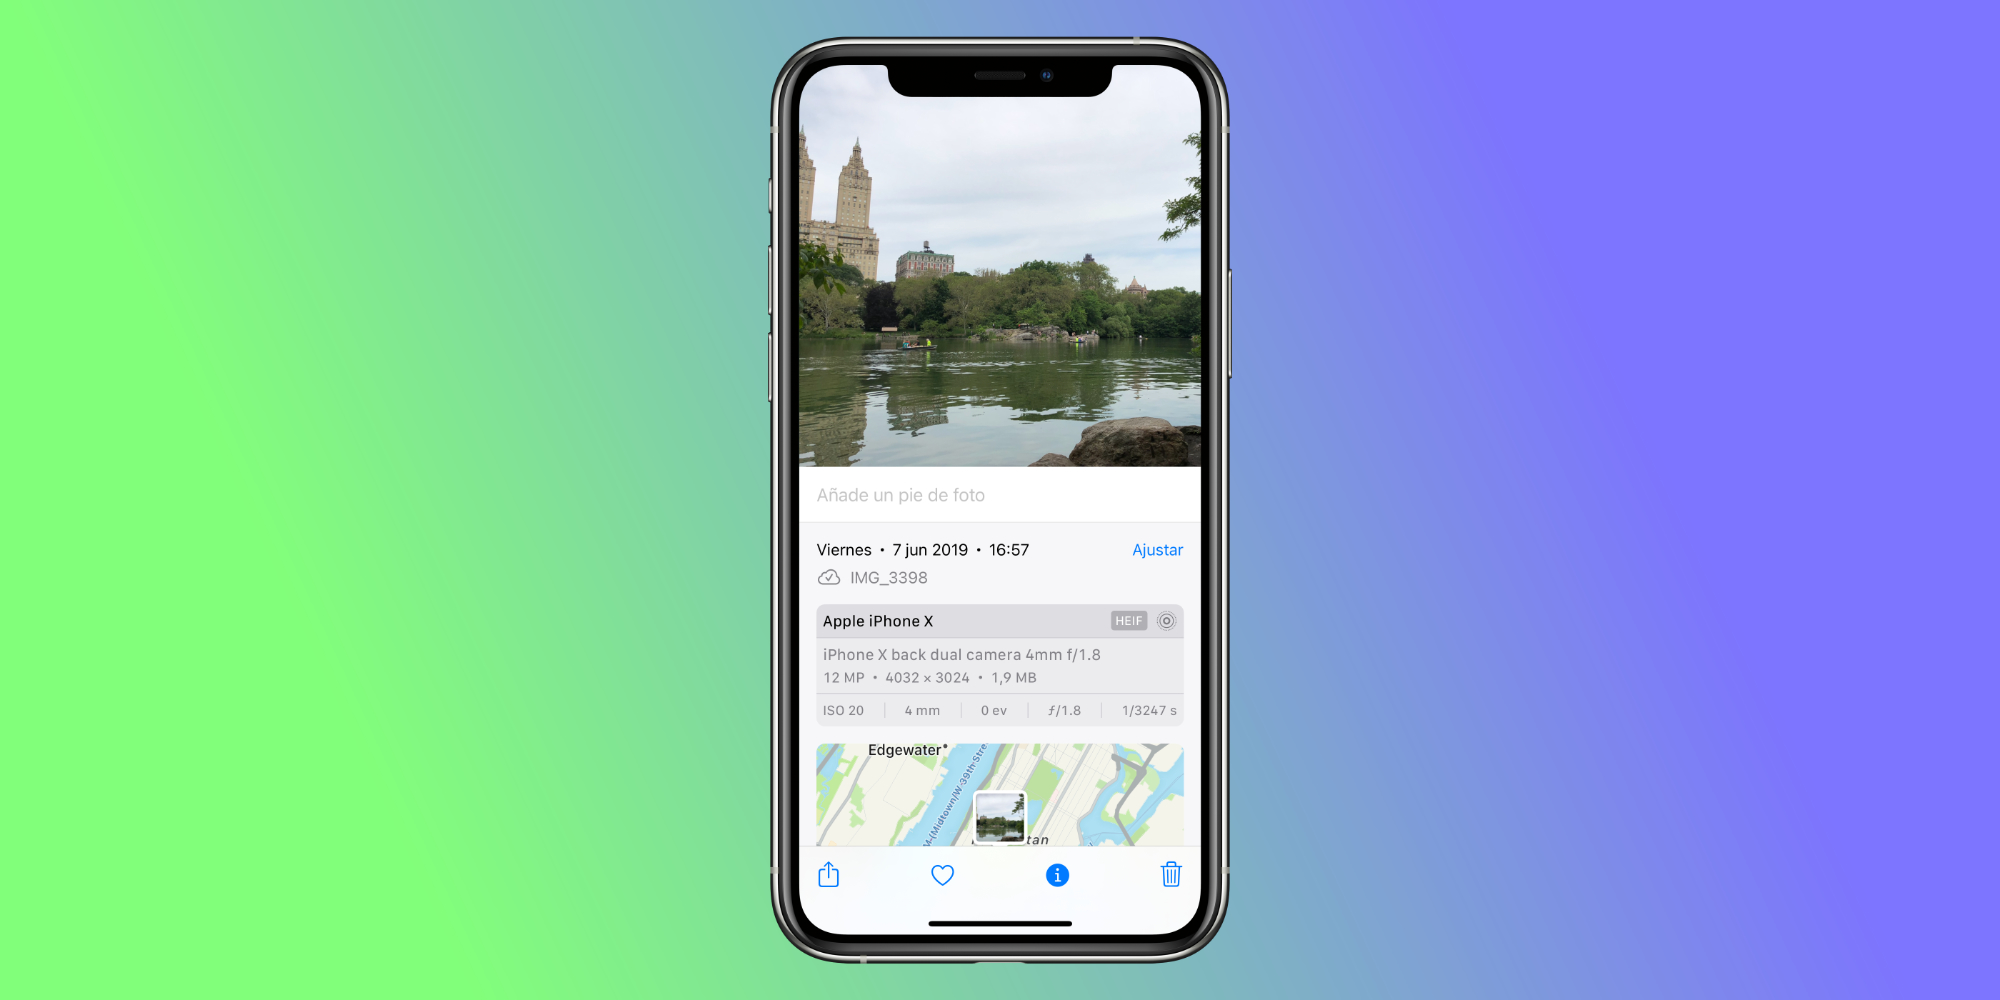 Fotos en iOS 15: Cómo ajustar la fecha, la hora y la ubicación de una foto